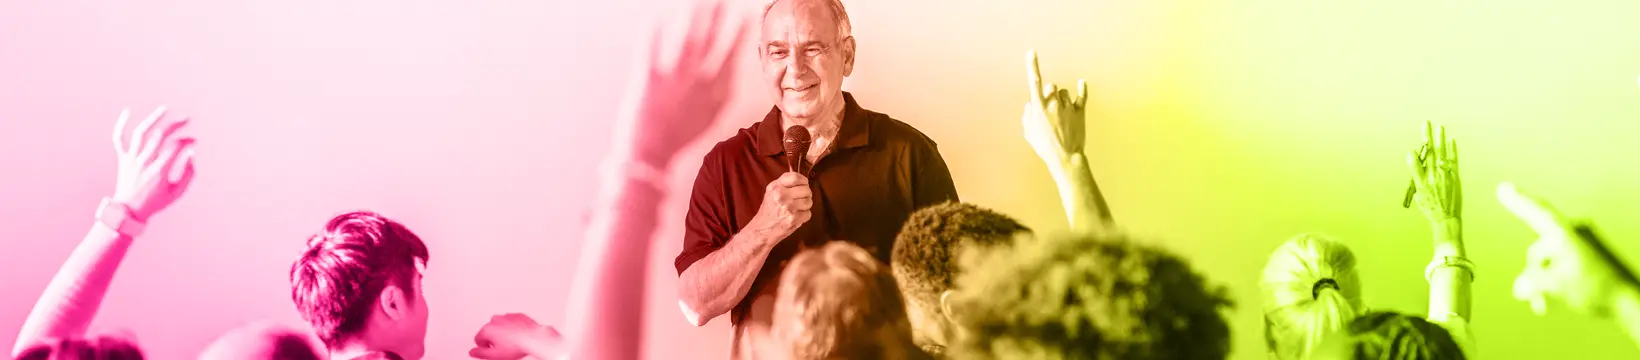 Mann mit Mikrofon vor einer Gruppe von Personen von denen einige sich melden. Bild ist mit einem Farbverlauf aus consus healthcare akademie Farben eingefärbt.